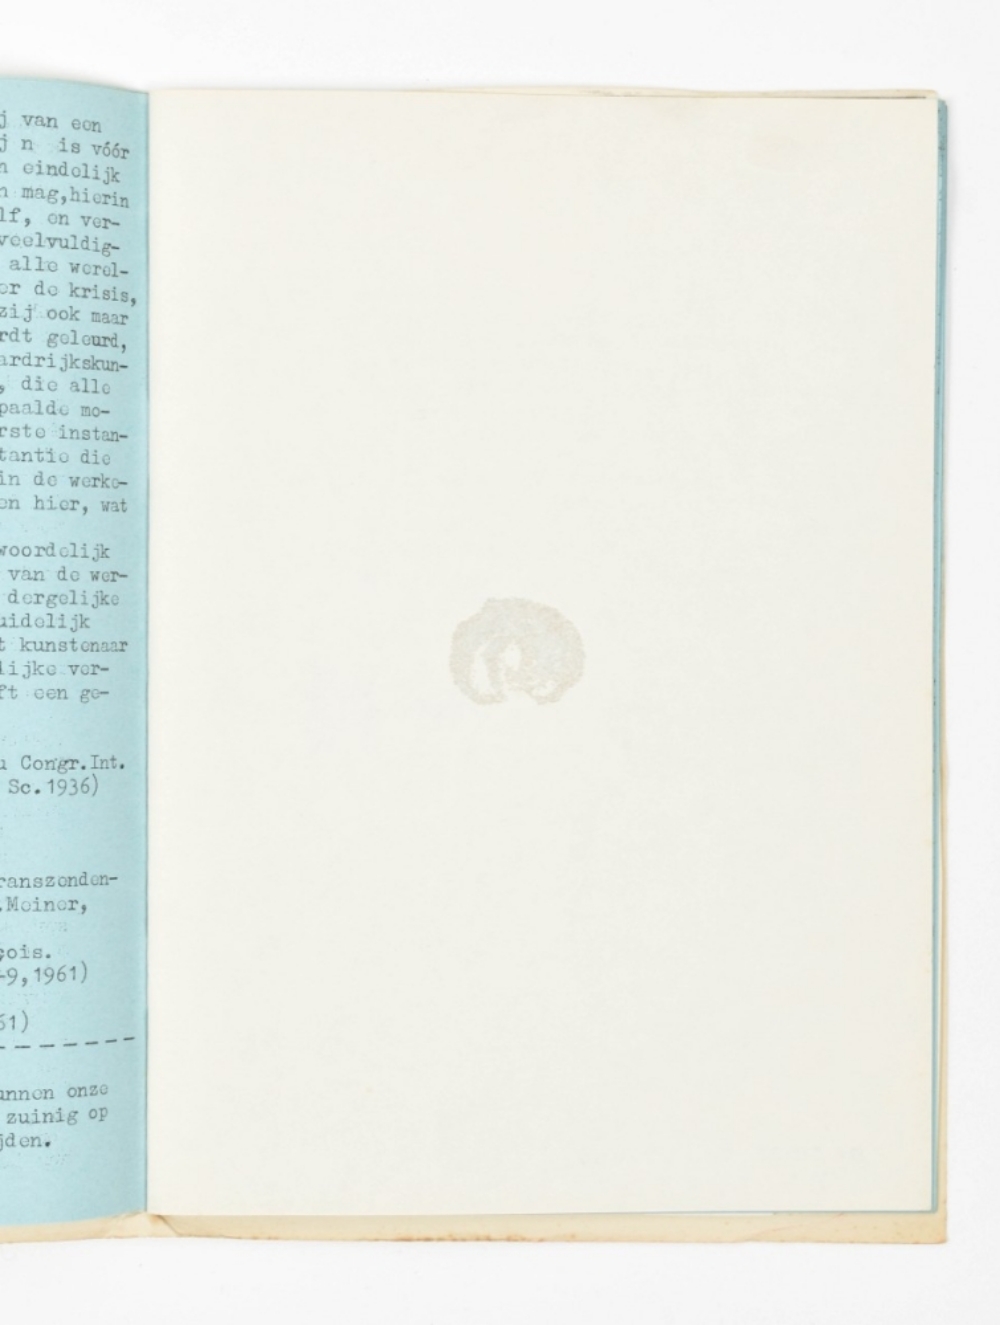 PTL: Tijdschrift voor Letteren en Schoone Kunsten No.1, Summer 1963 - Image 4 of 6